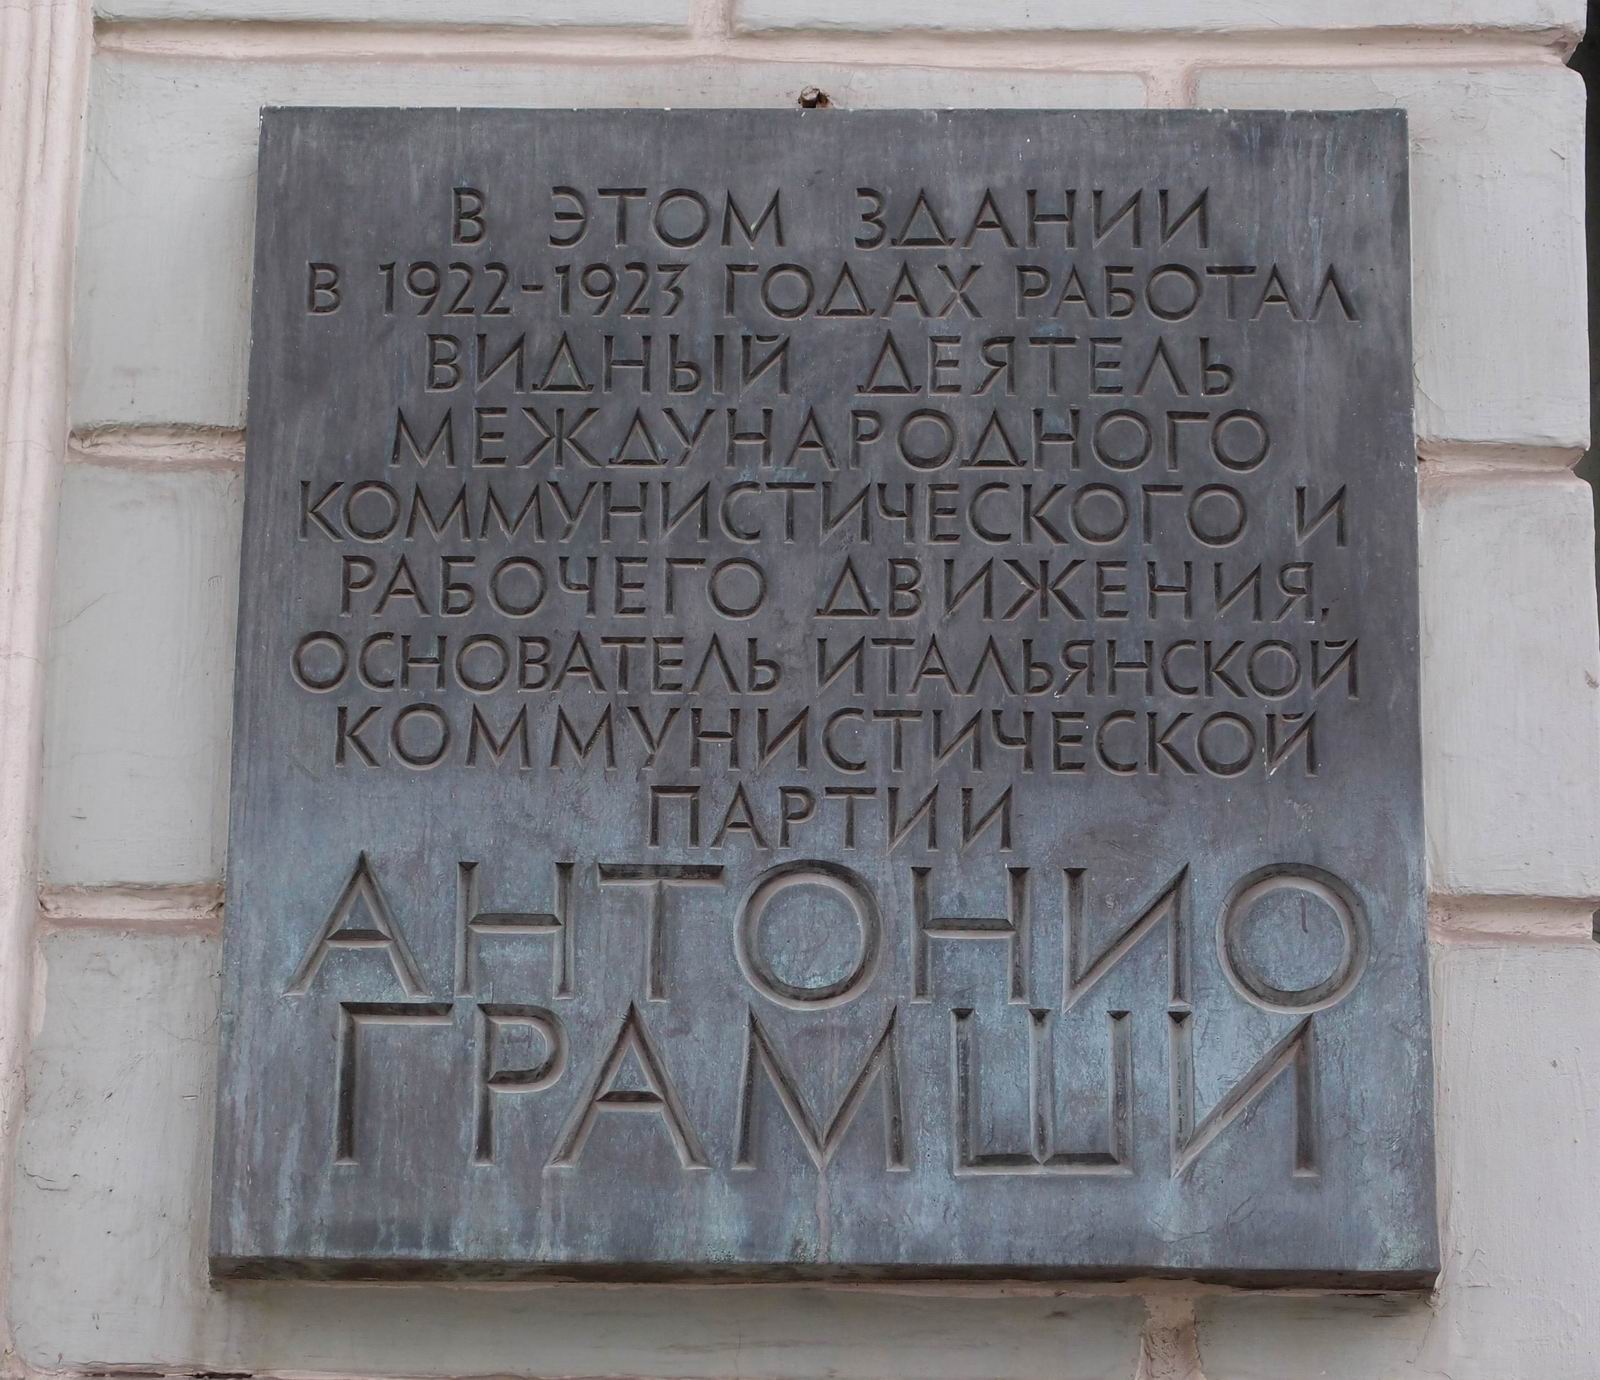 Мемориальная доска Грамши Антонио (1891–1937), арх. С.И.Смирнов, на улице Воздвиженка, дом 1, открыта 4.5.1979.